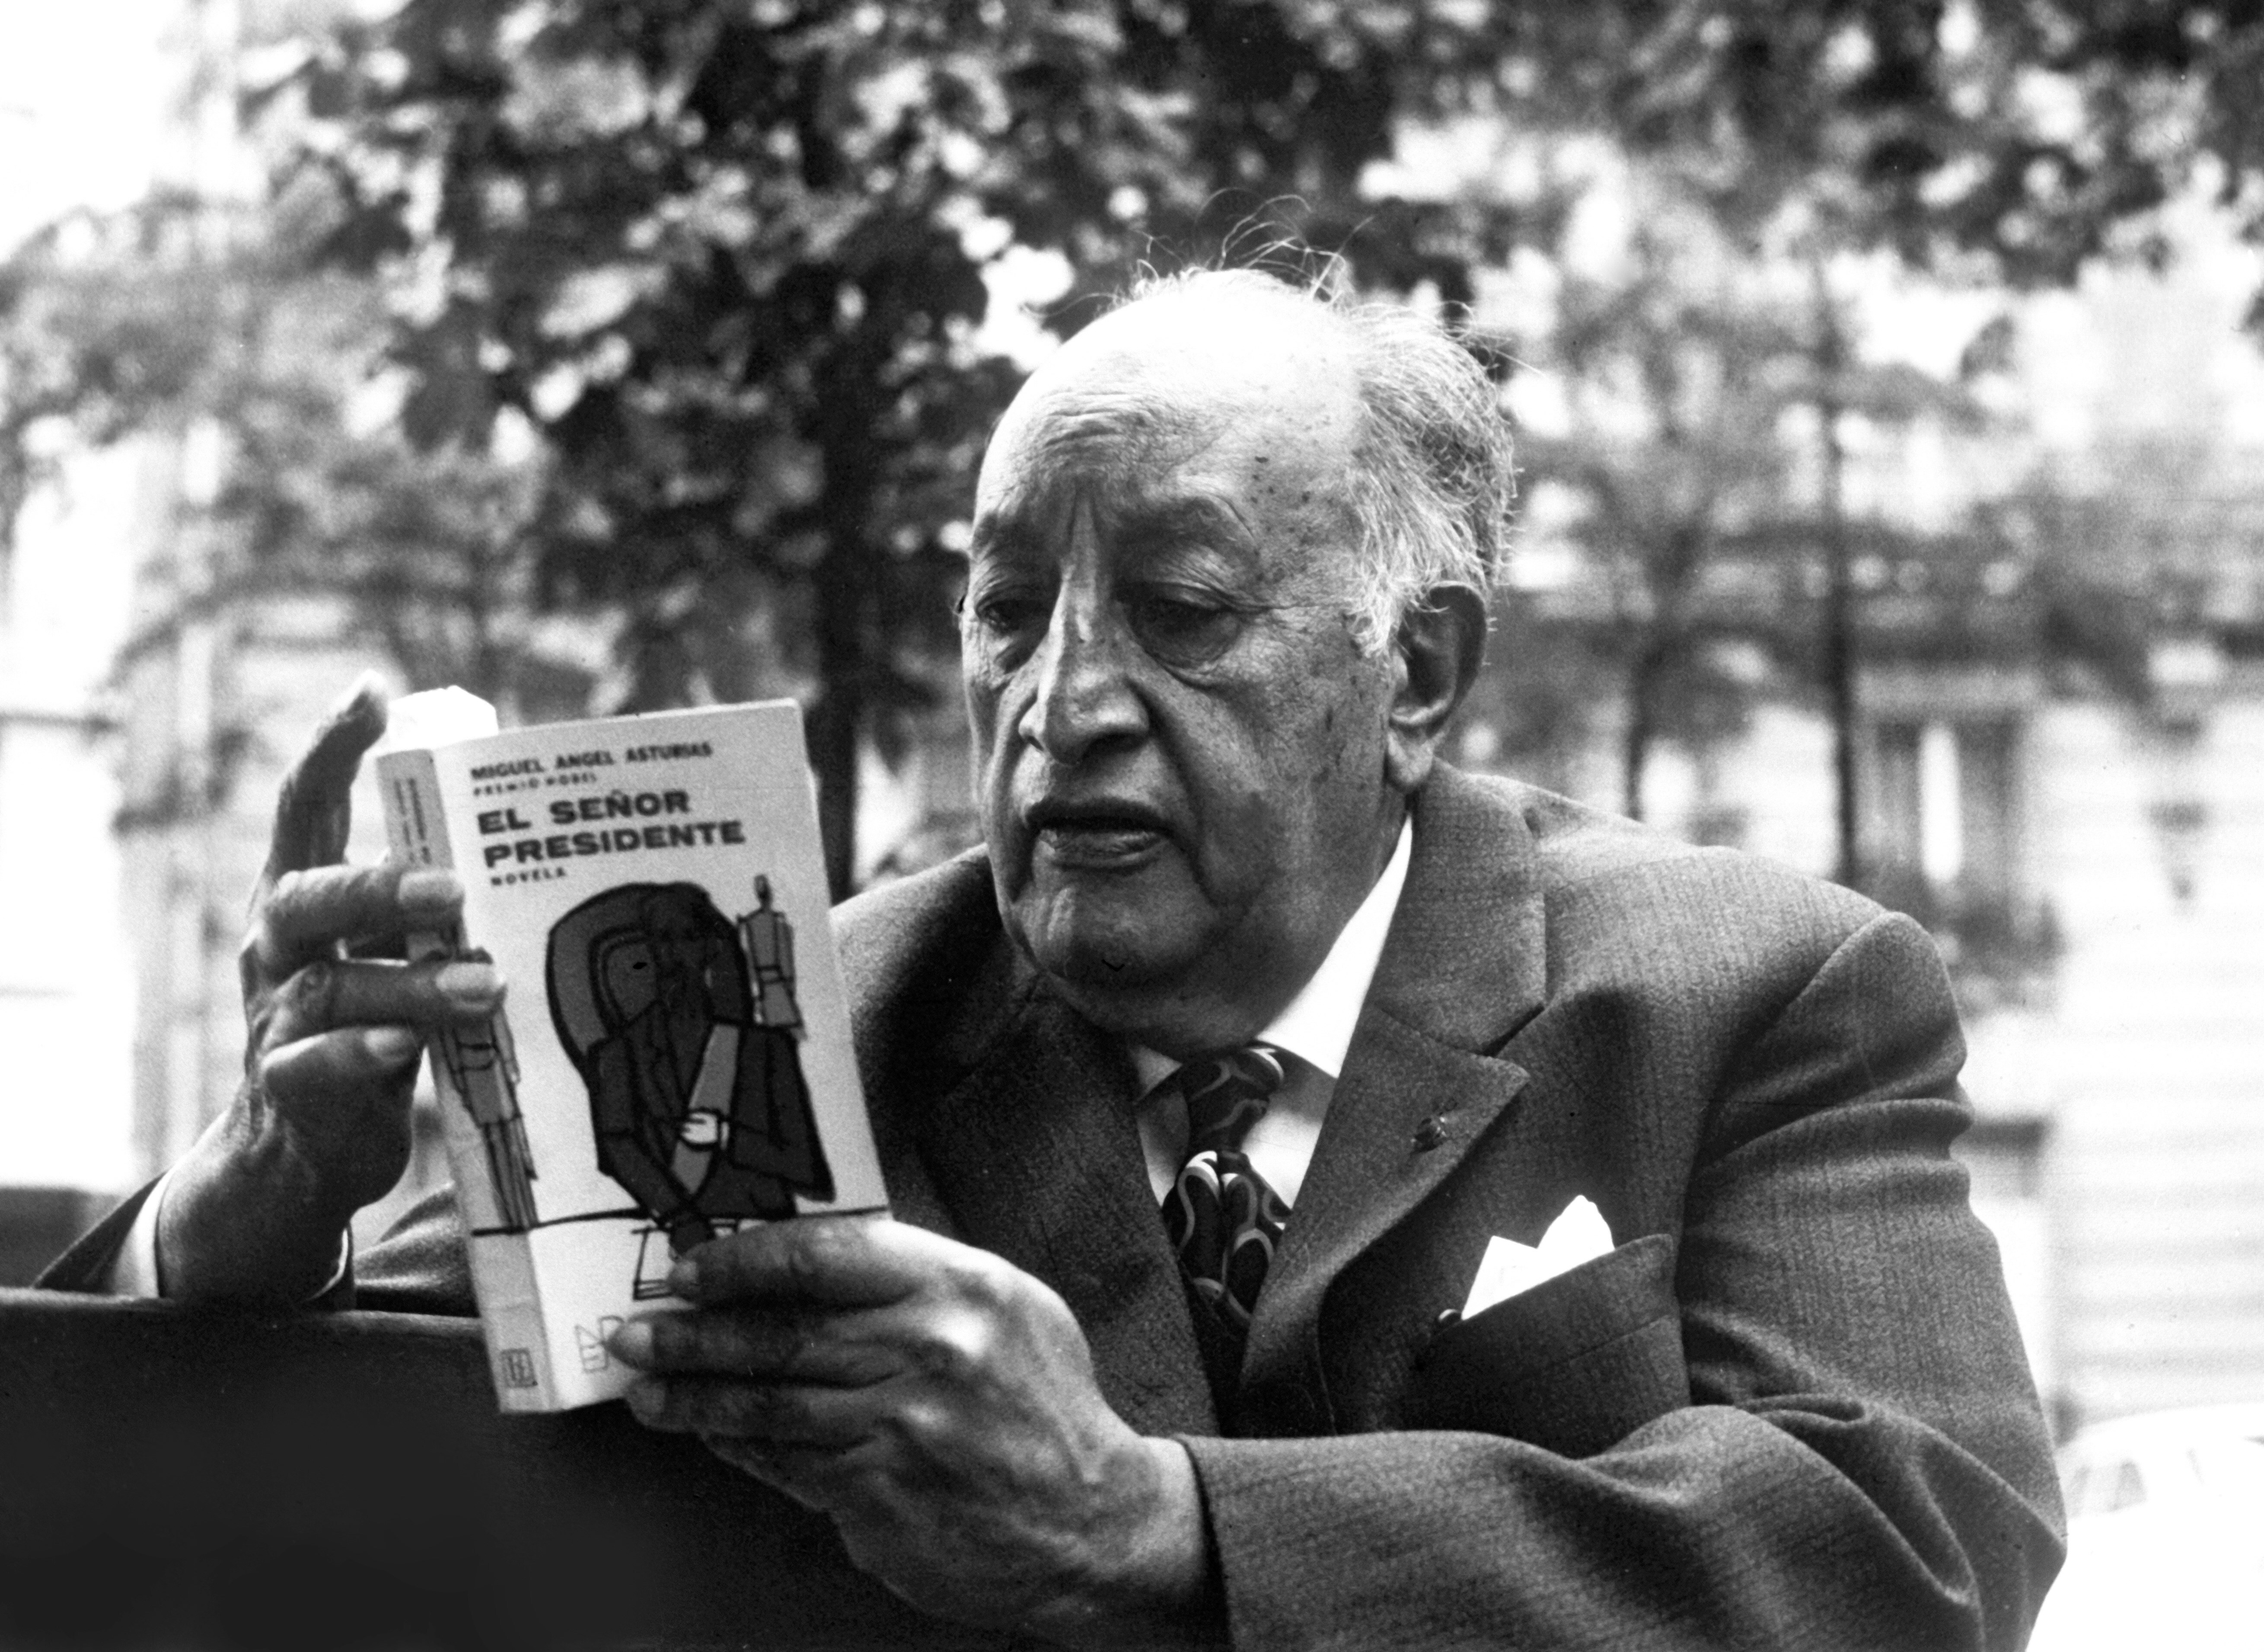 El escritor guatemalteco Miguel Angel Asturias, Premio Nobel de Literatura en 1967, lee su libro "El señor presidente". (Foto Prensa LIbre: EFE)

